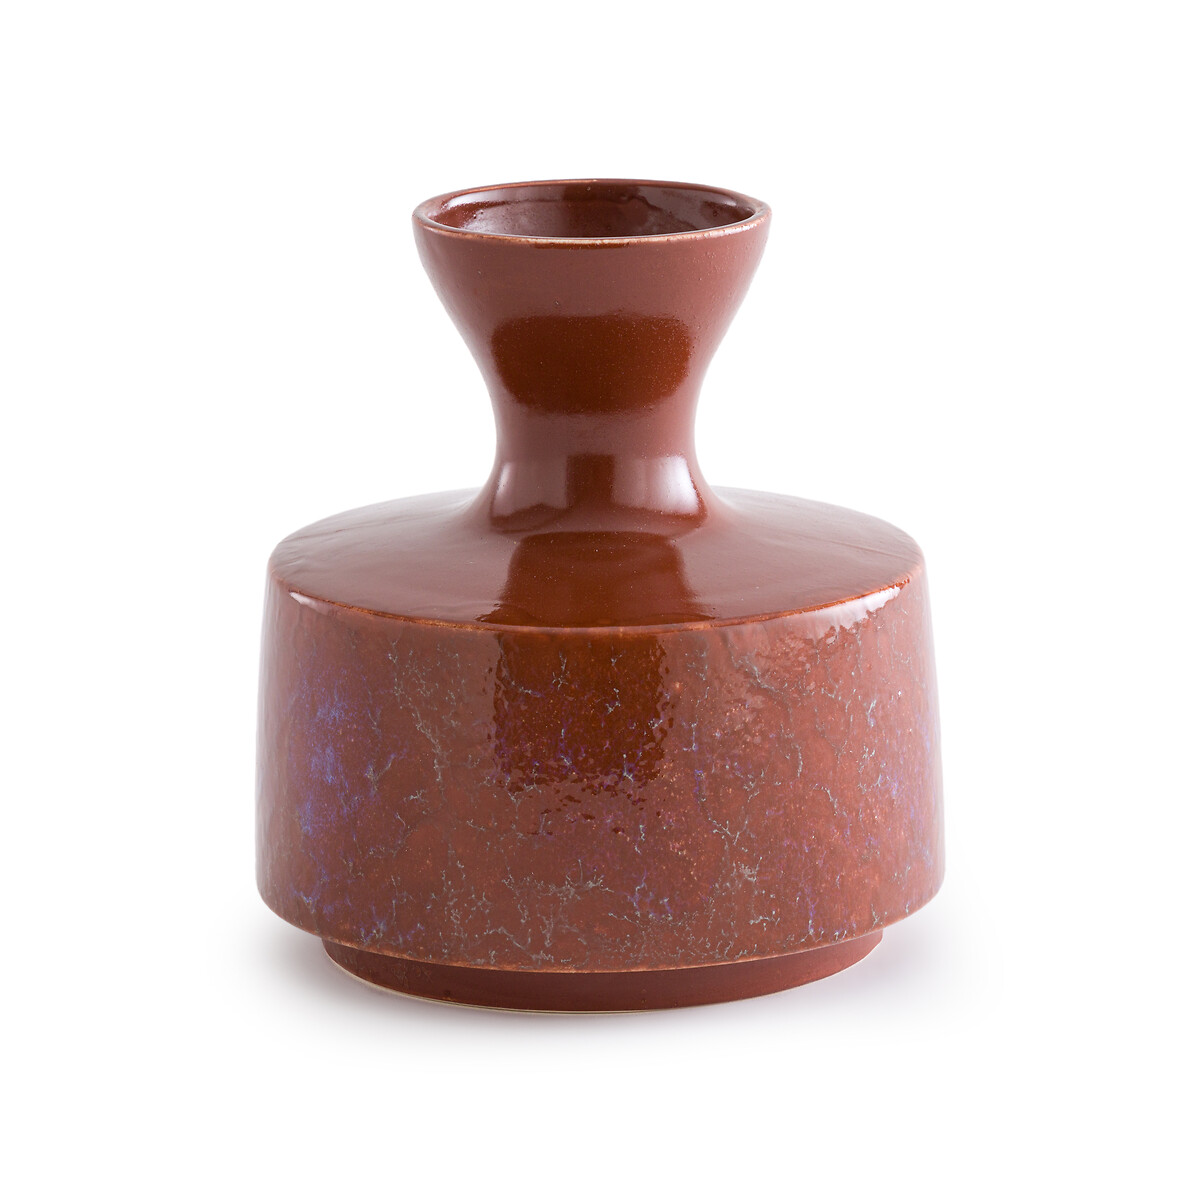 Ваза из глазурованной керамики Medine единый размер каштановый ваза из глазурованной керамики в295 cм mikoly единый размер каштановый